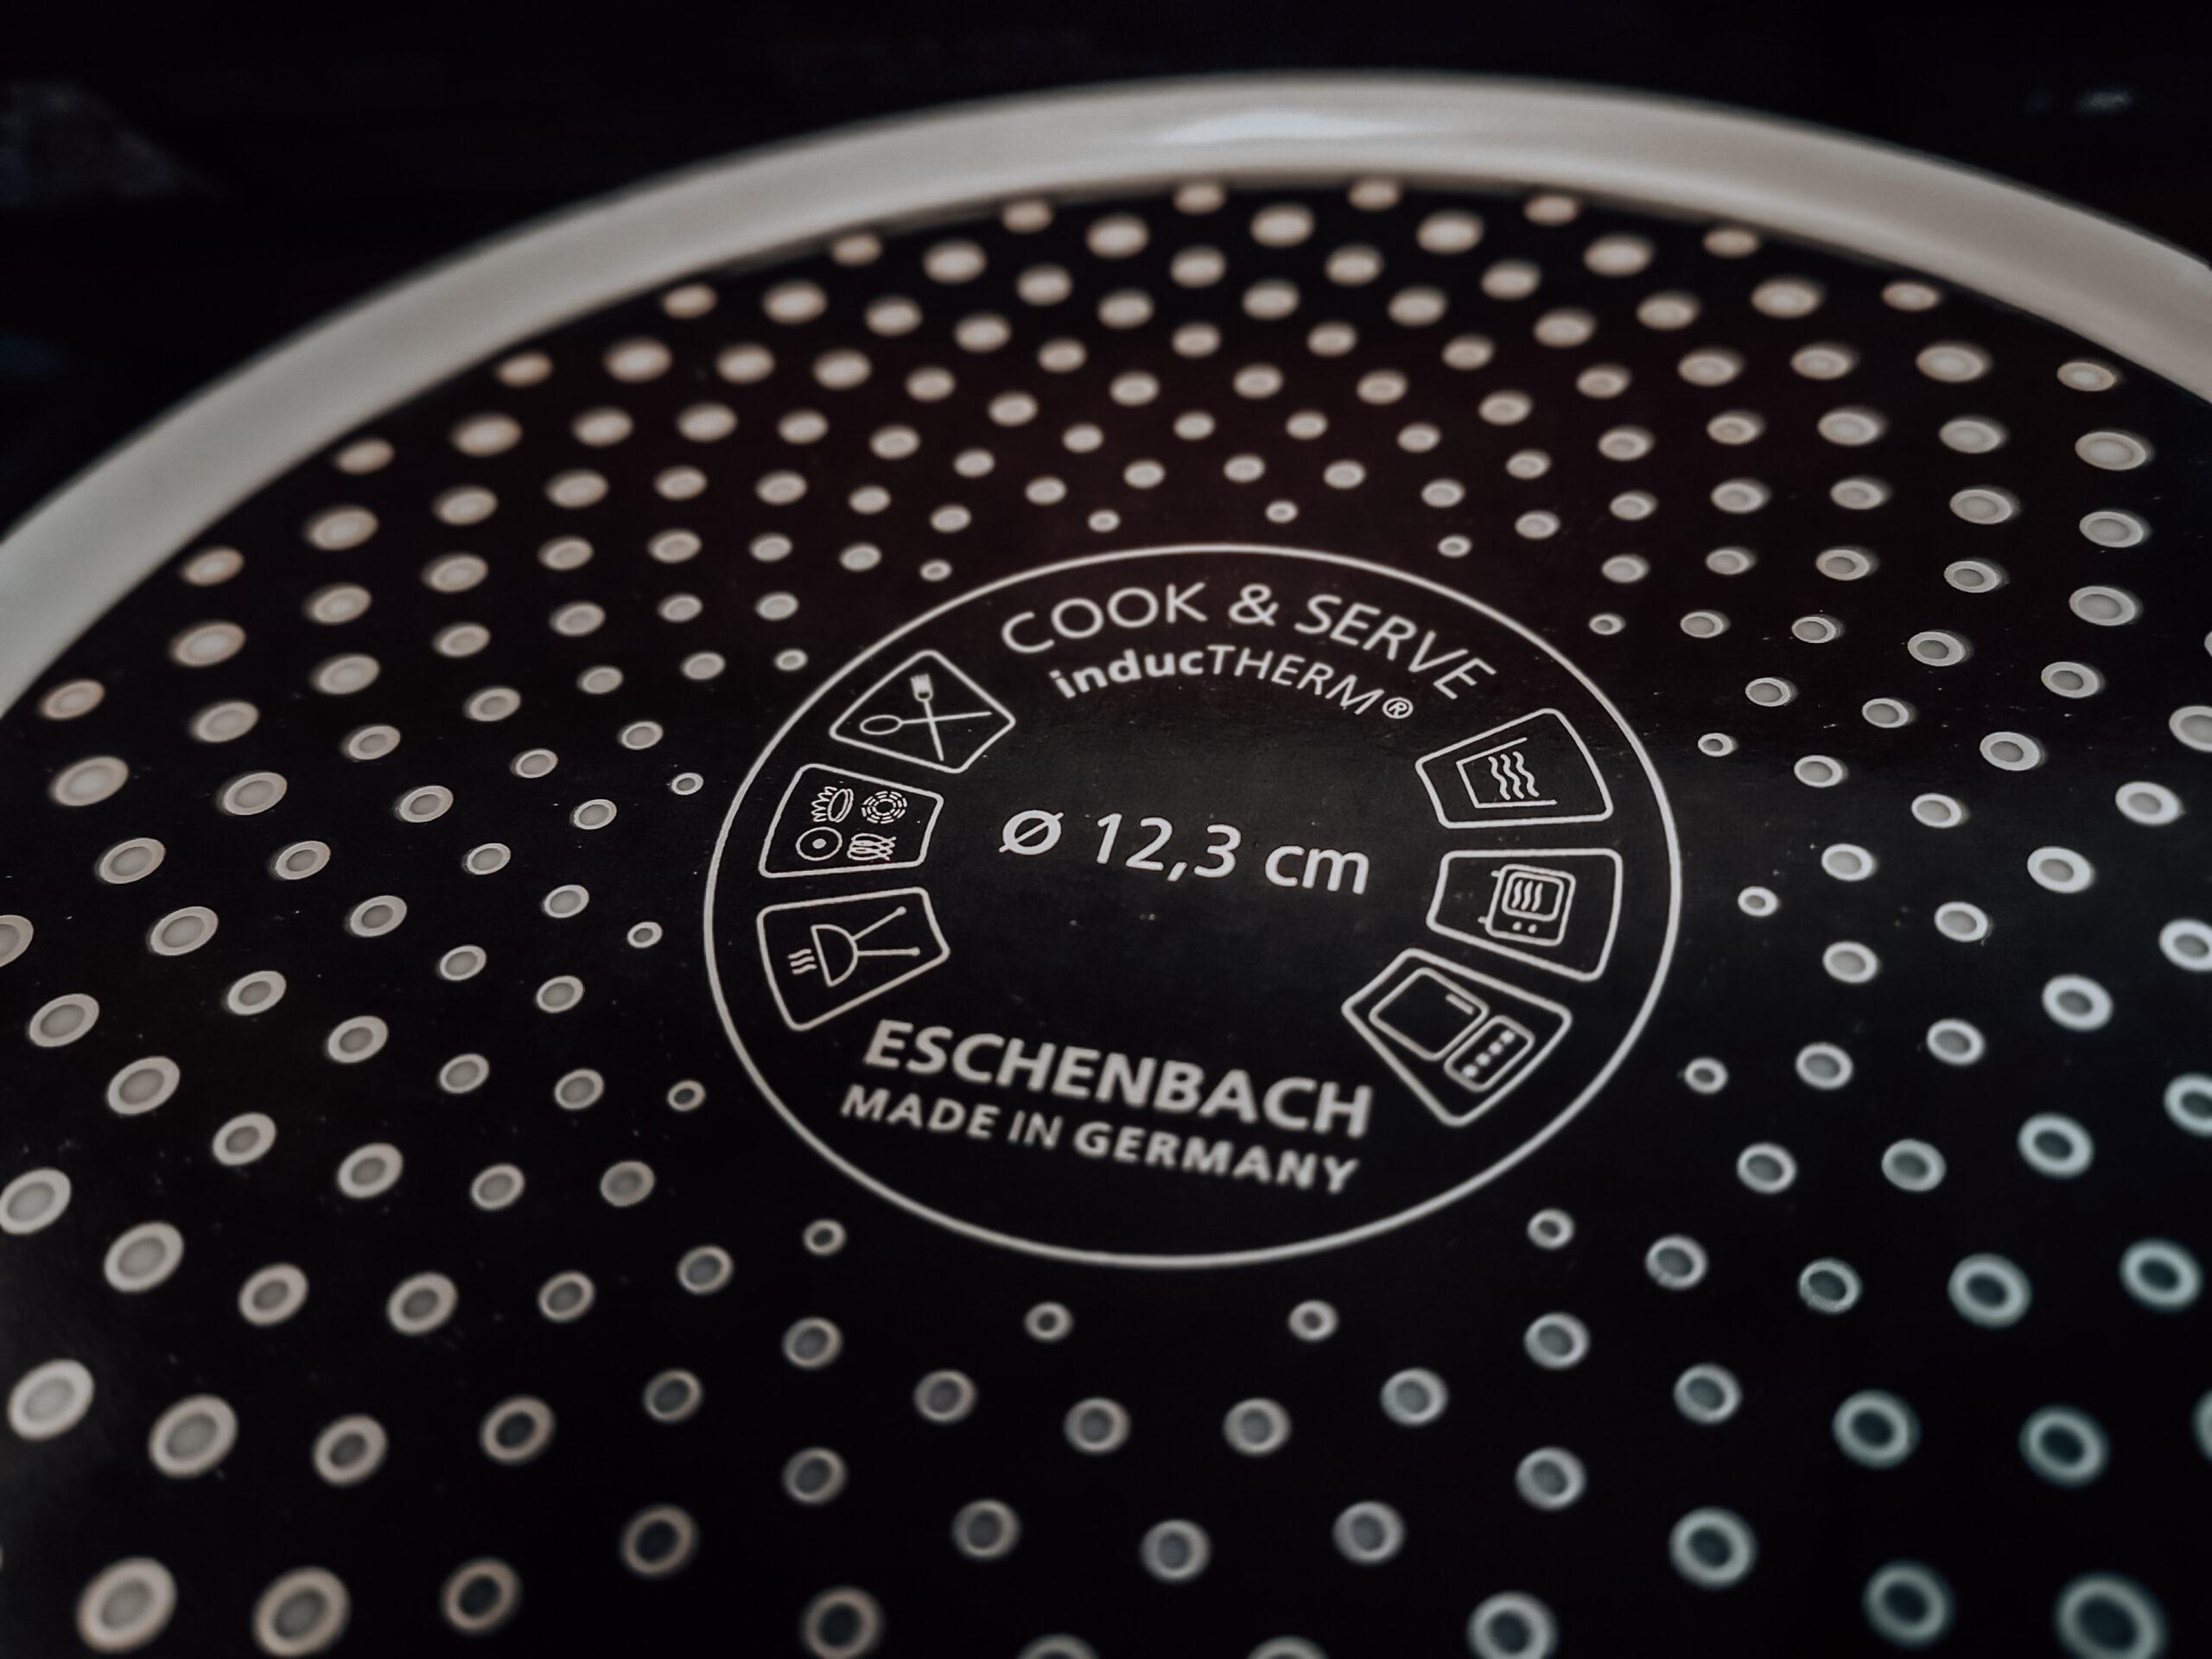 Eschenbach – Das Porzellan welches uns jahrelang gefehlt hat #Werbung